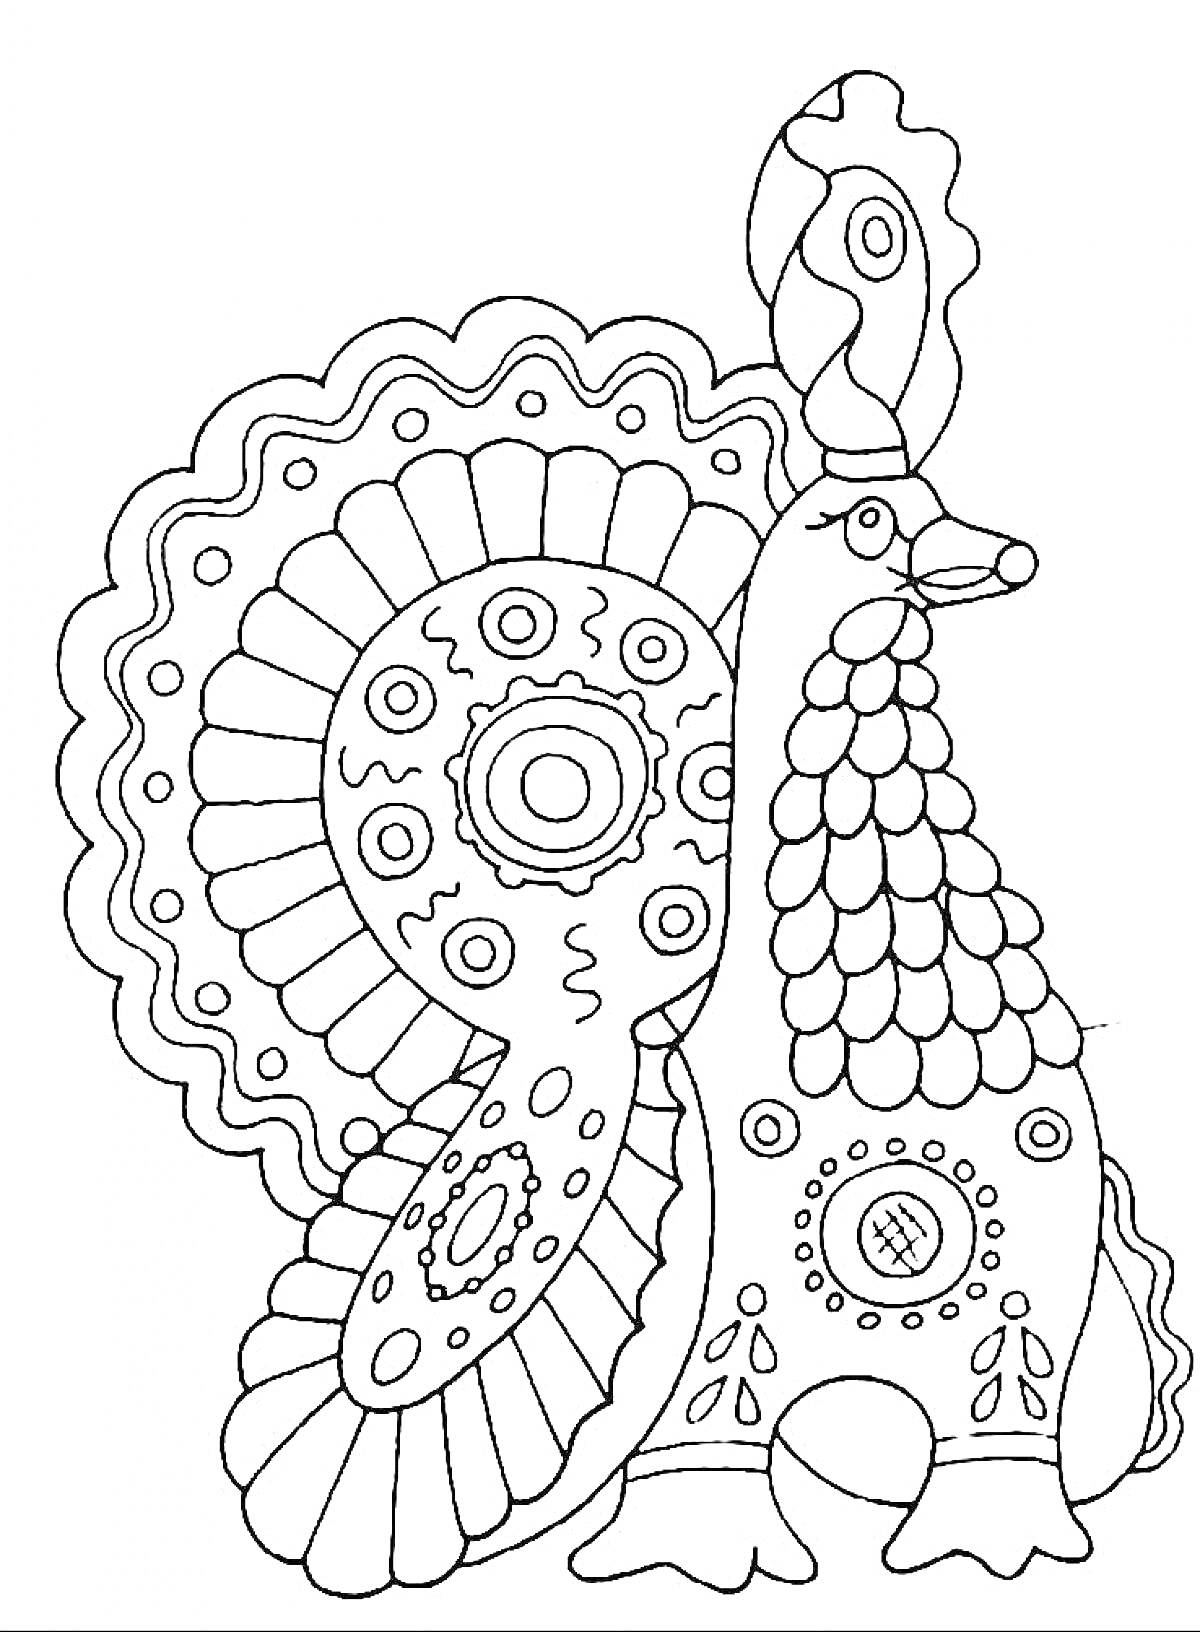 Раскраска Петух с узором на хвосте и туловище, с декоративными кругами и волнистыми линиями